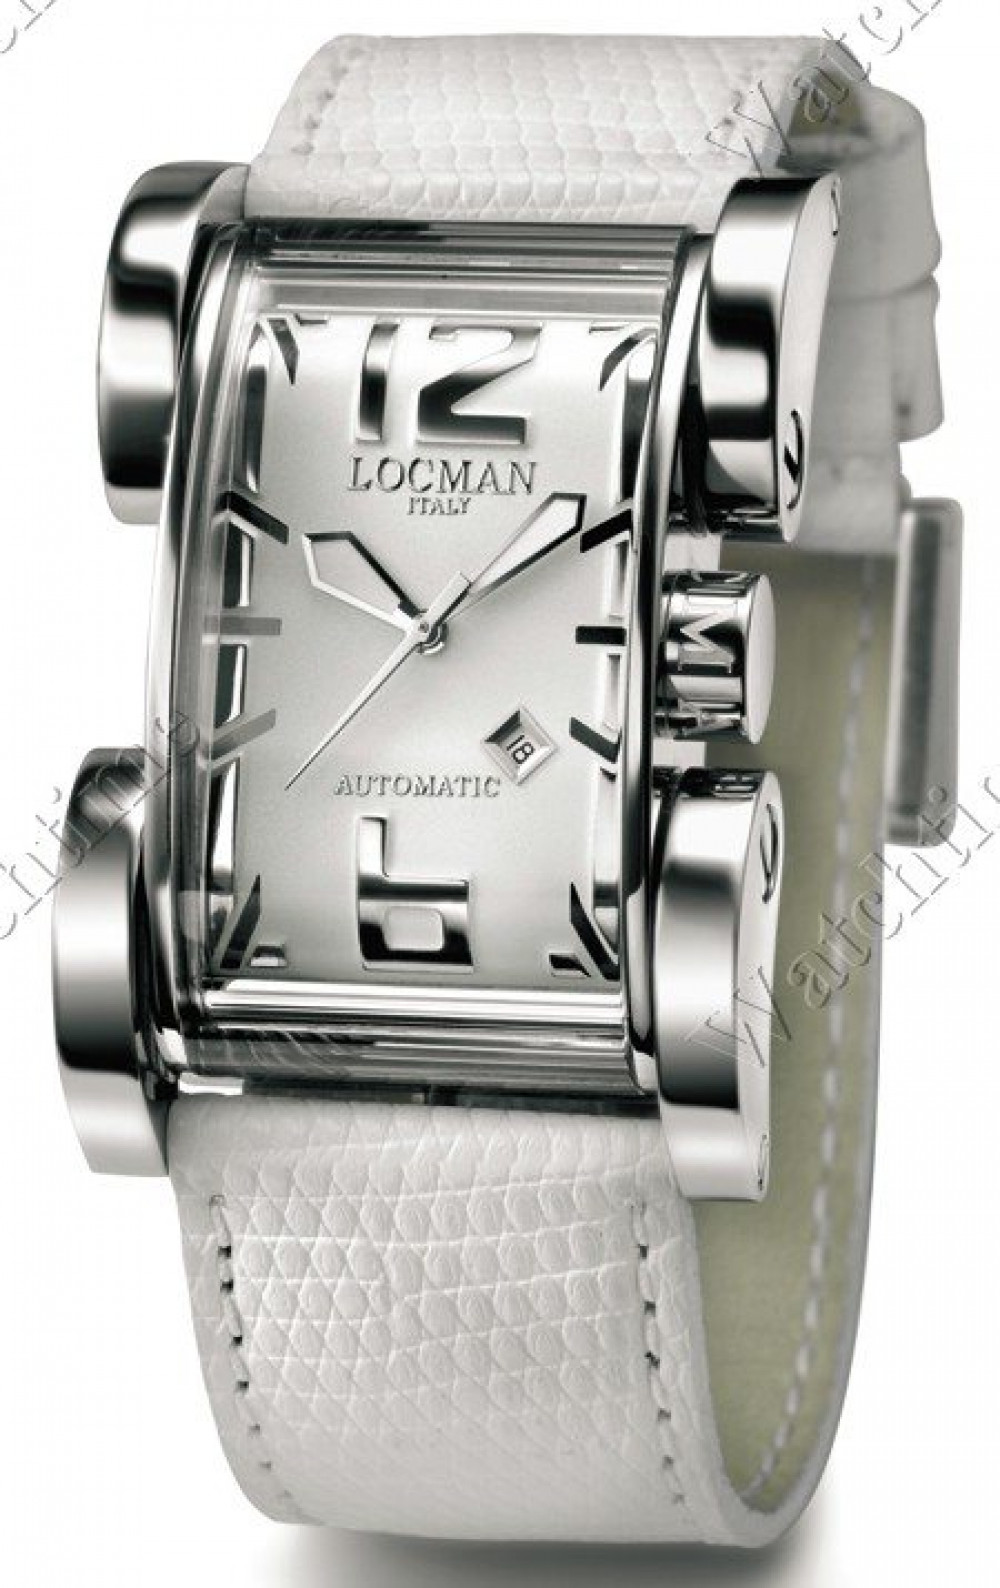 Zegarek firmy Locman, model Latin Lover